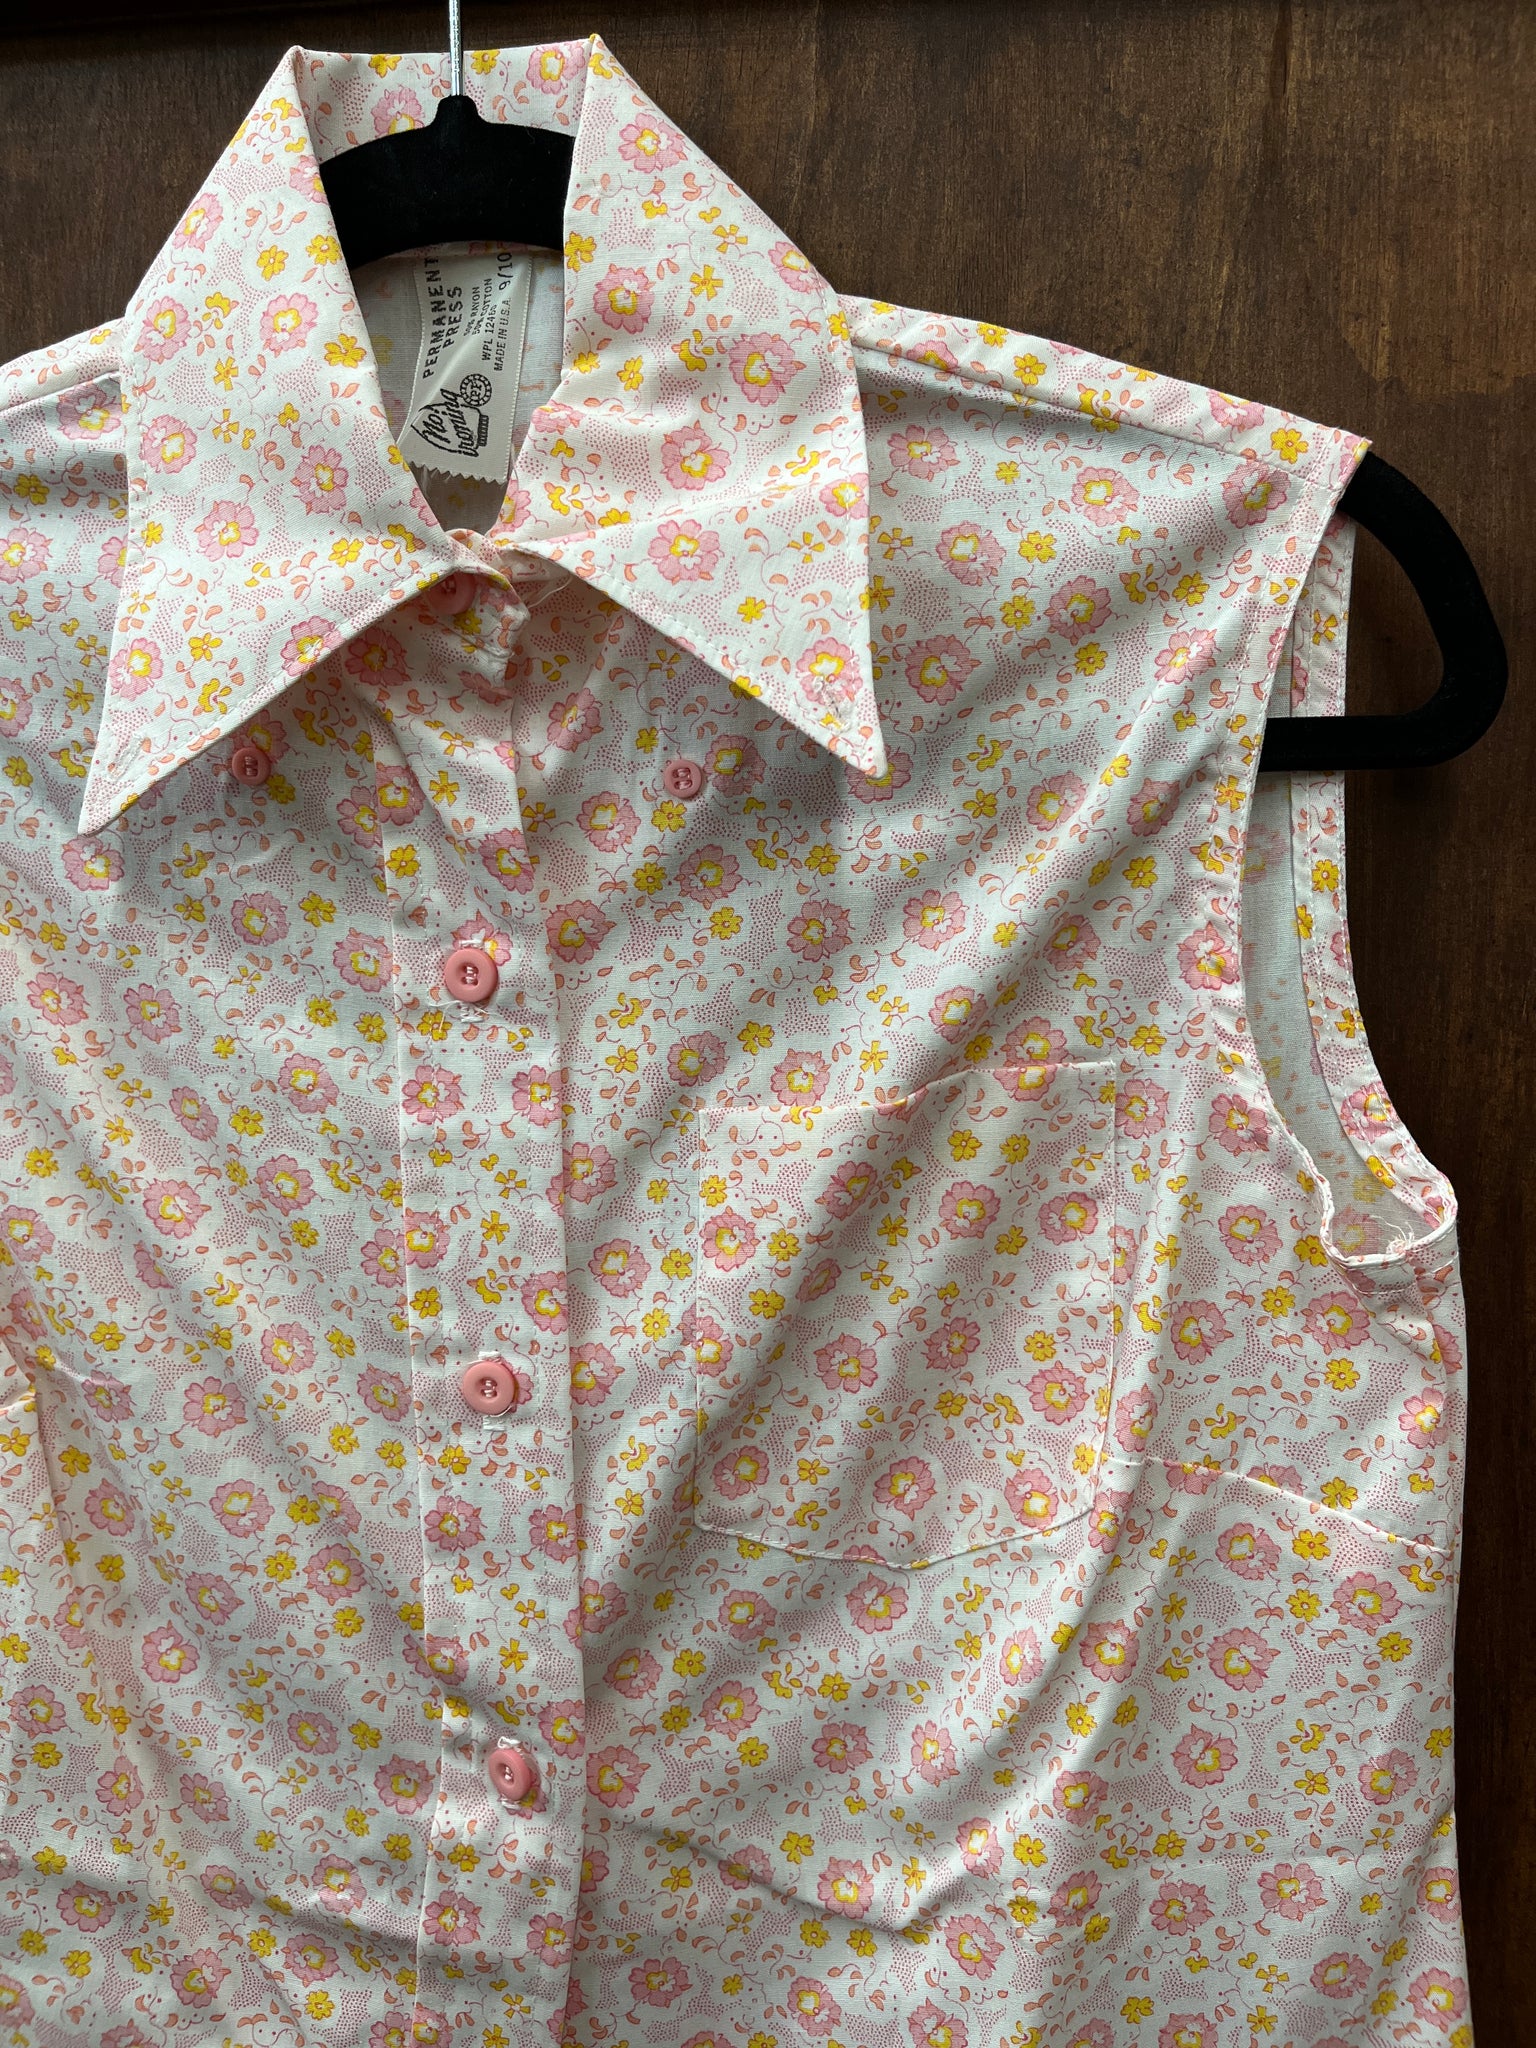 1960s DRESS- Permanent Press pink little diddy sleeveless shirtdress